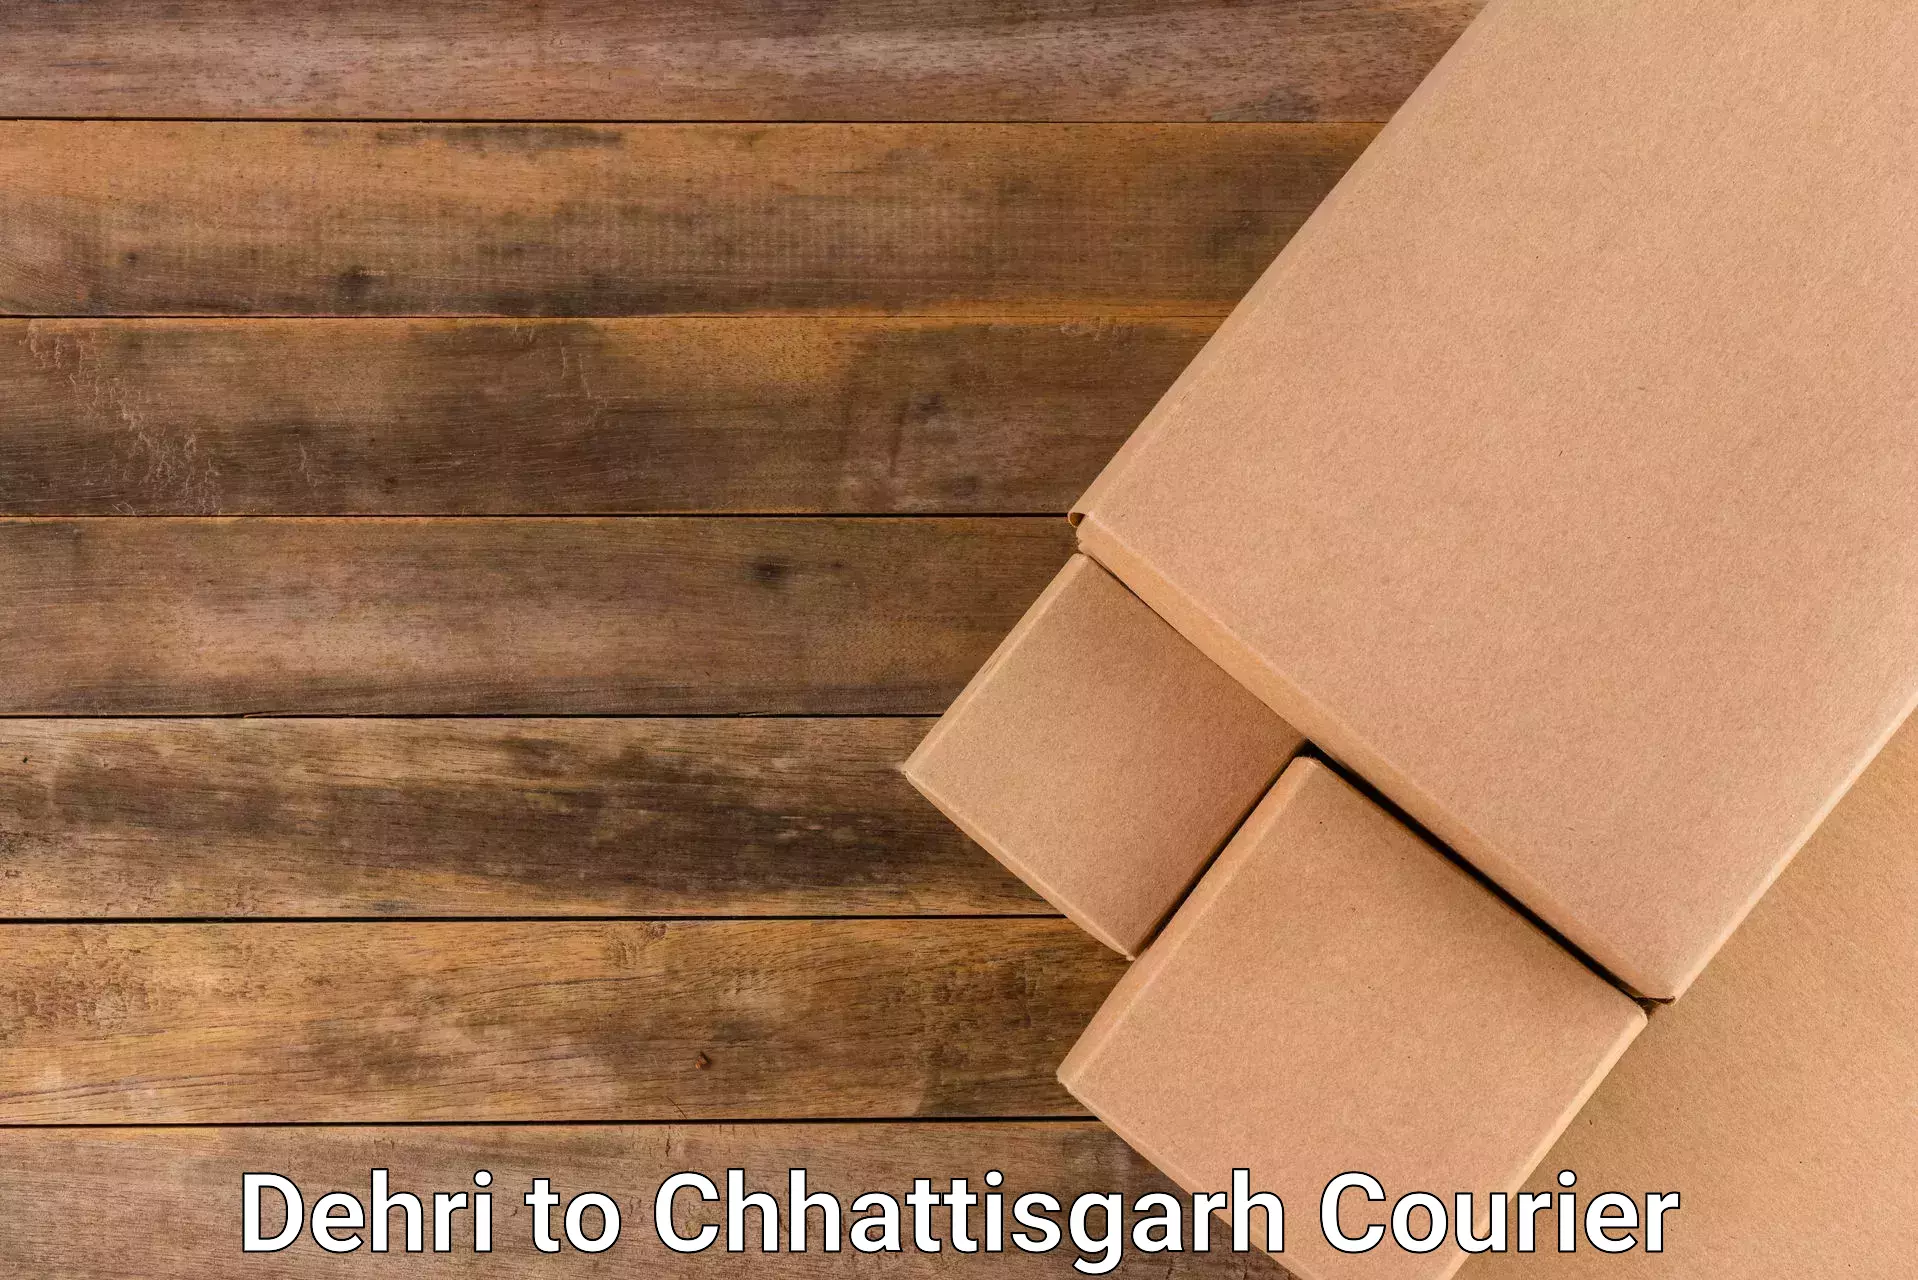 Express logistics providers in Dehri to Chhattisgarh